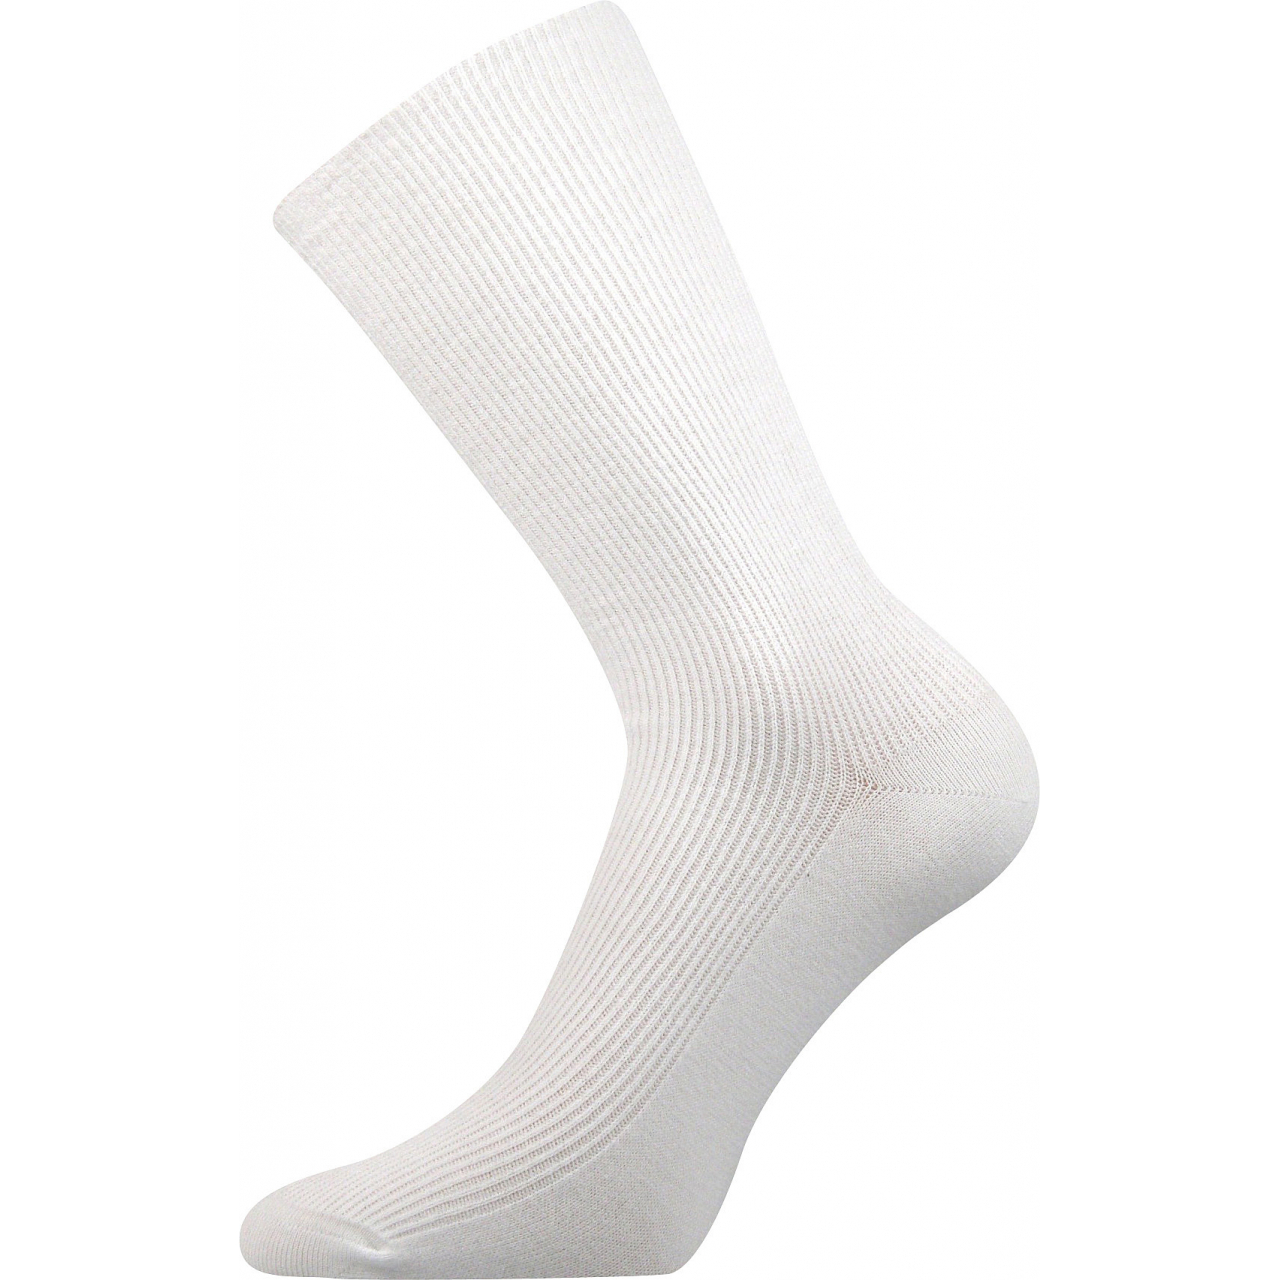 Ponožky speciální unisex Lonka Oregan - bílé, 35-38